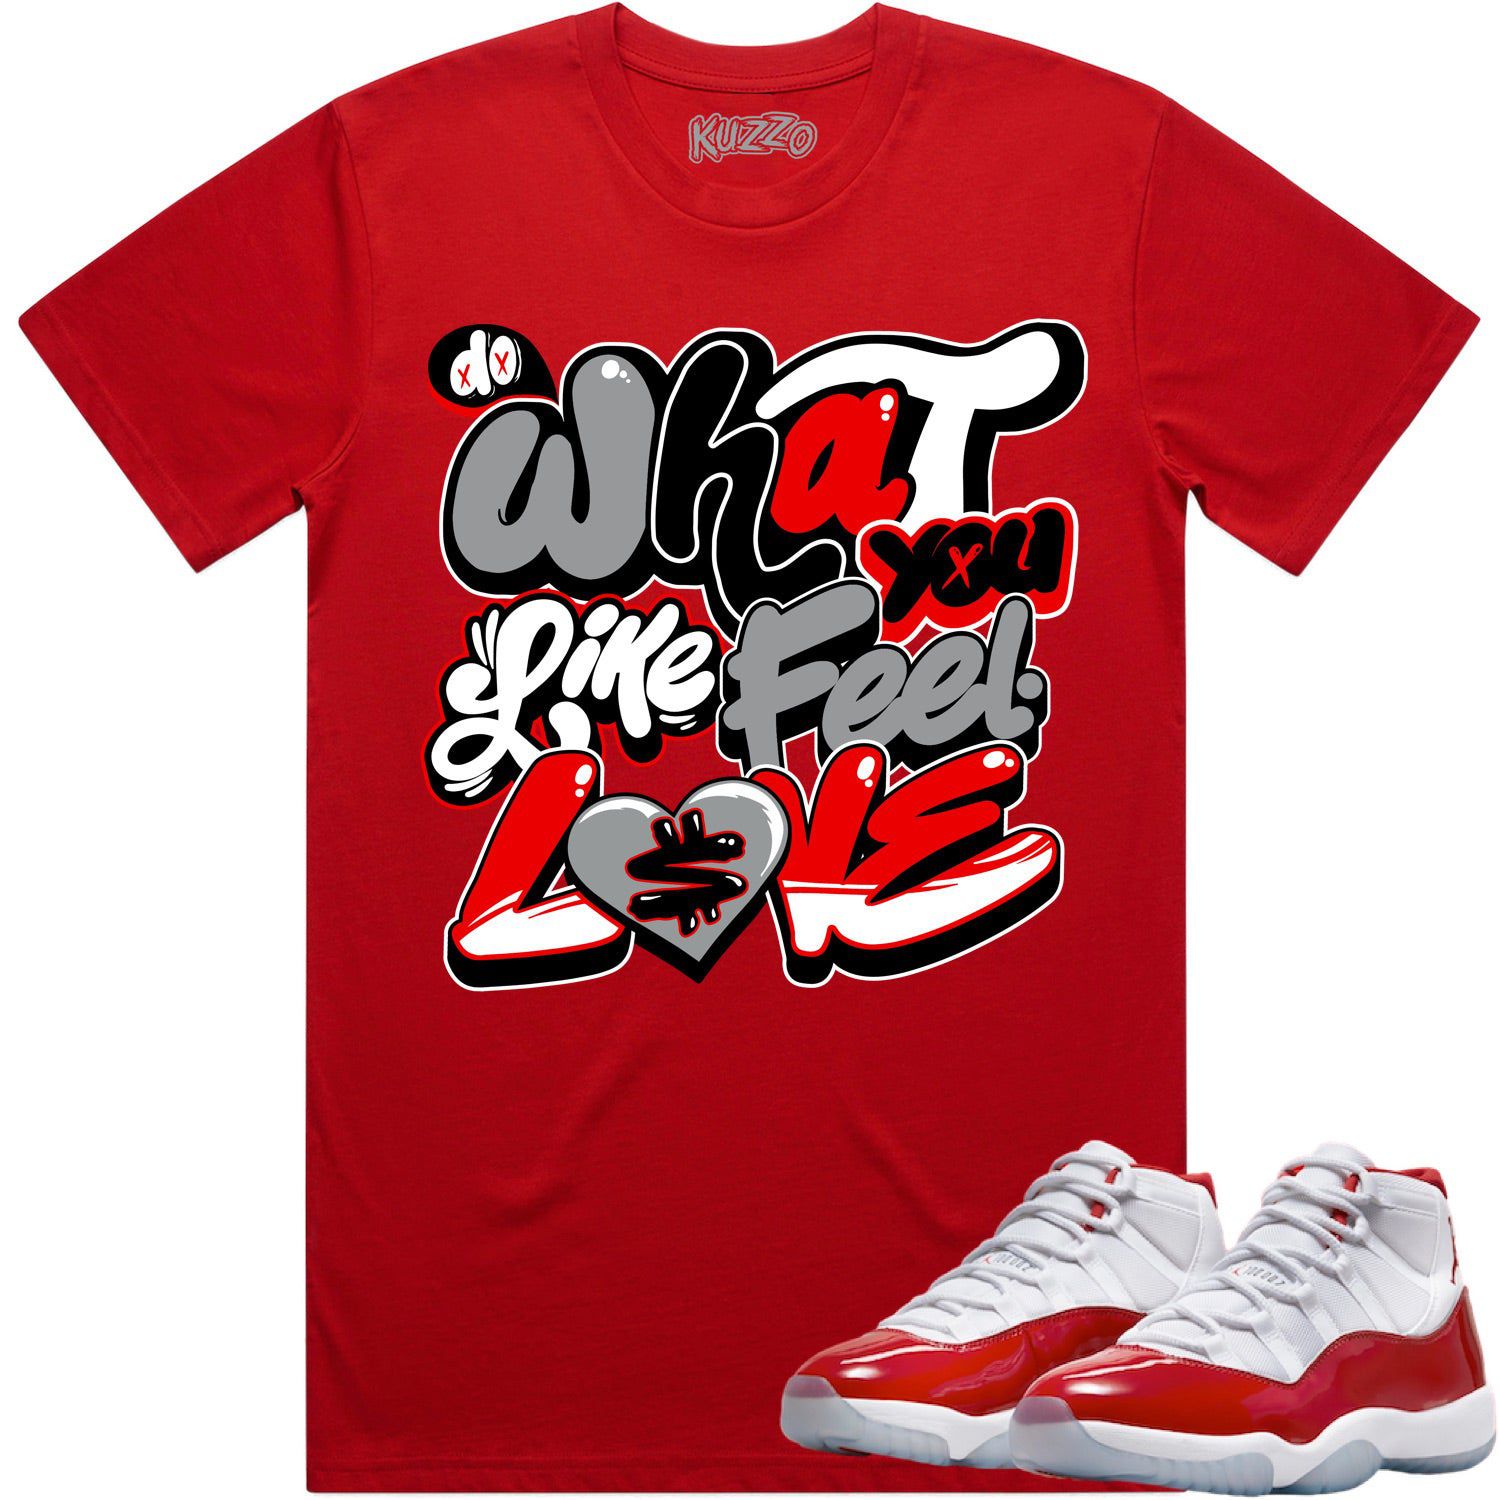 Cherry 11s Shirt - Jordan Retro 11 Cherry Shirts - Red Sauce